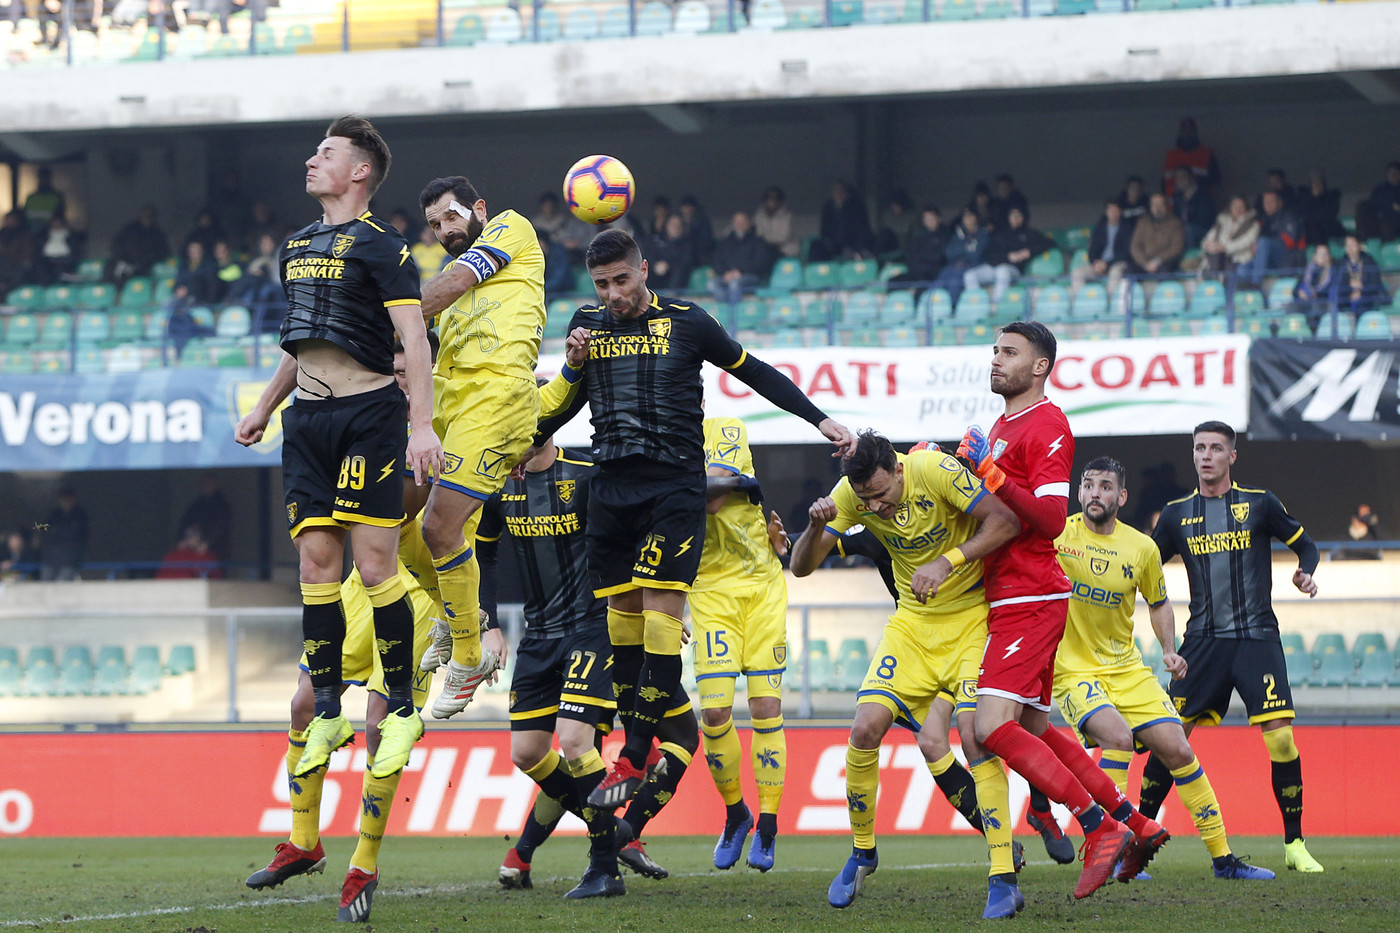 Serie A, Chievo-Frosinone 1-0 | Il fotoracconto